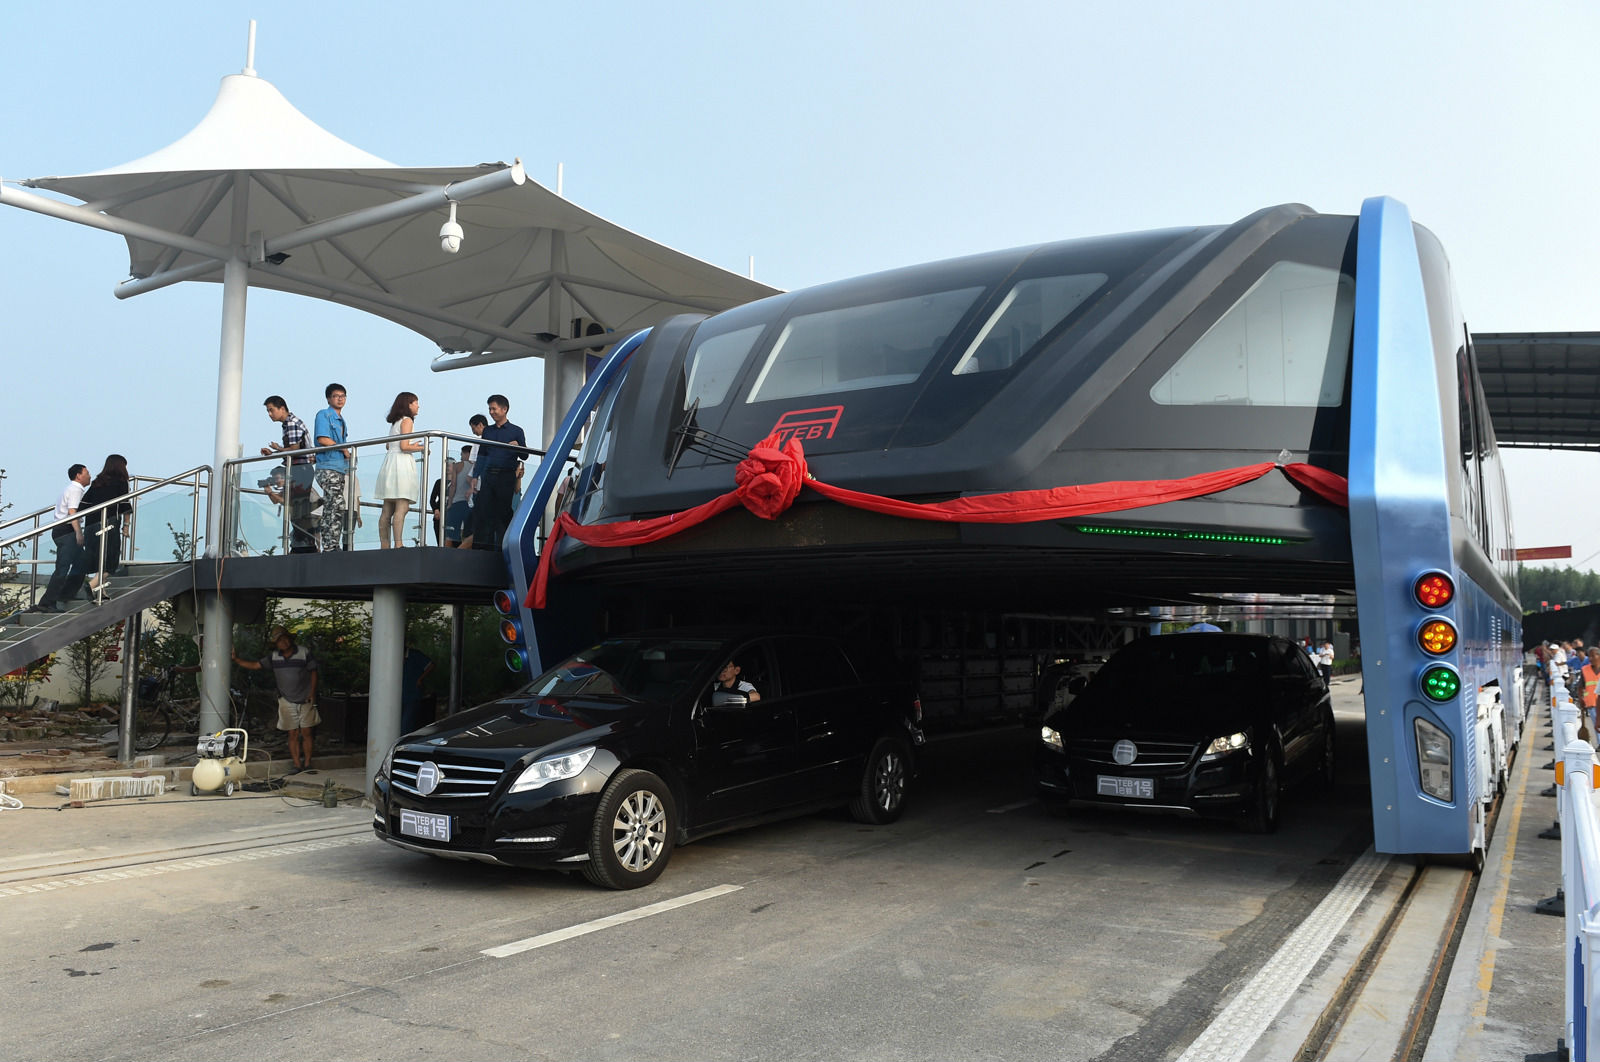 TEB, El gigantesco autobús chino, ya es una realidad